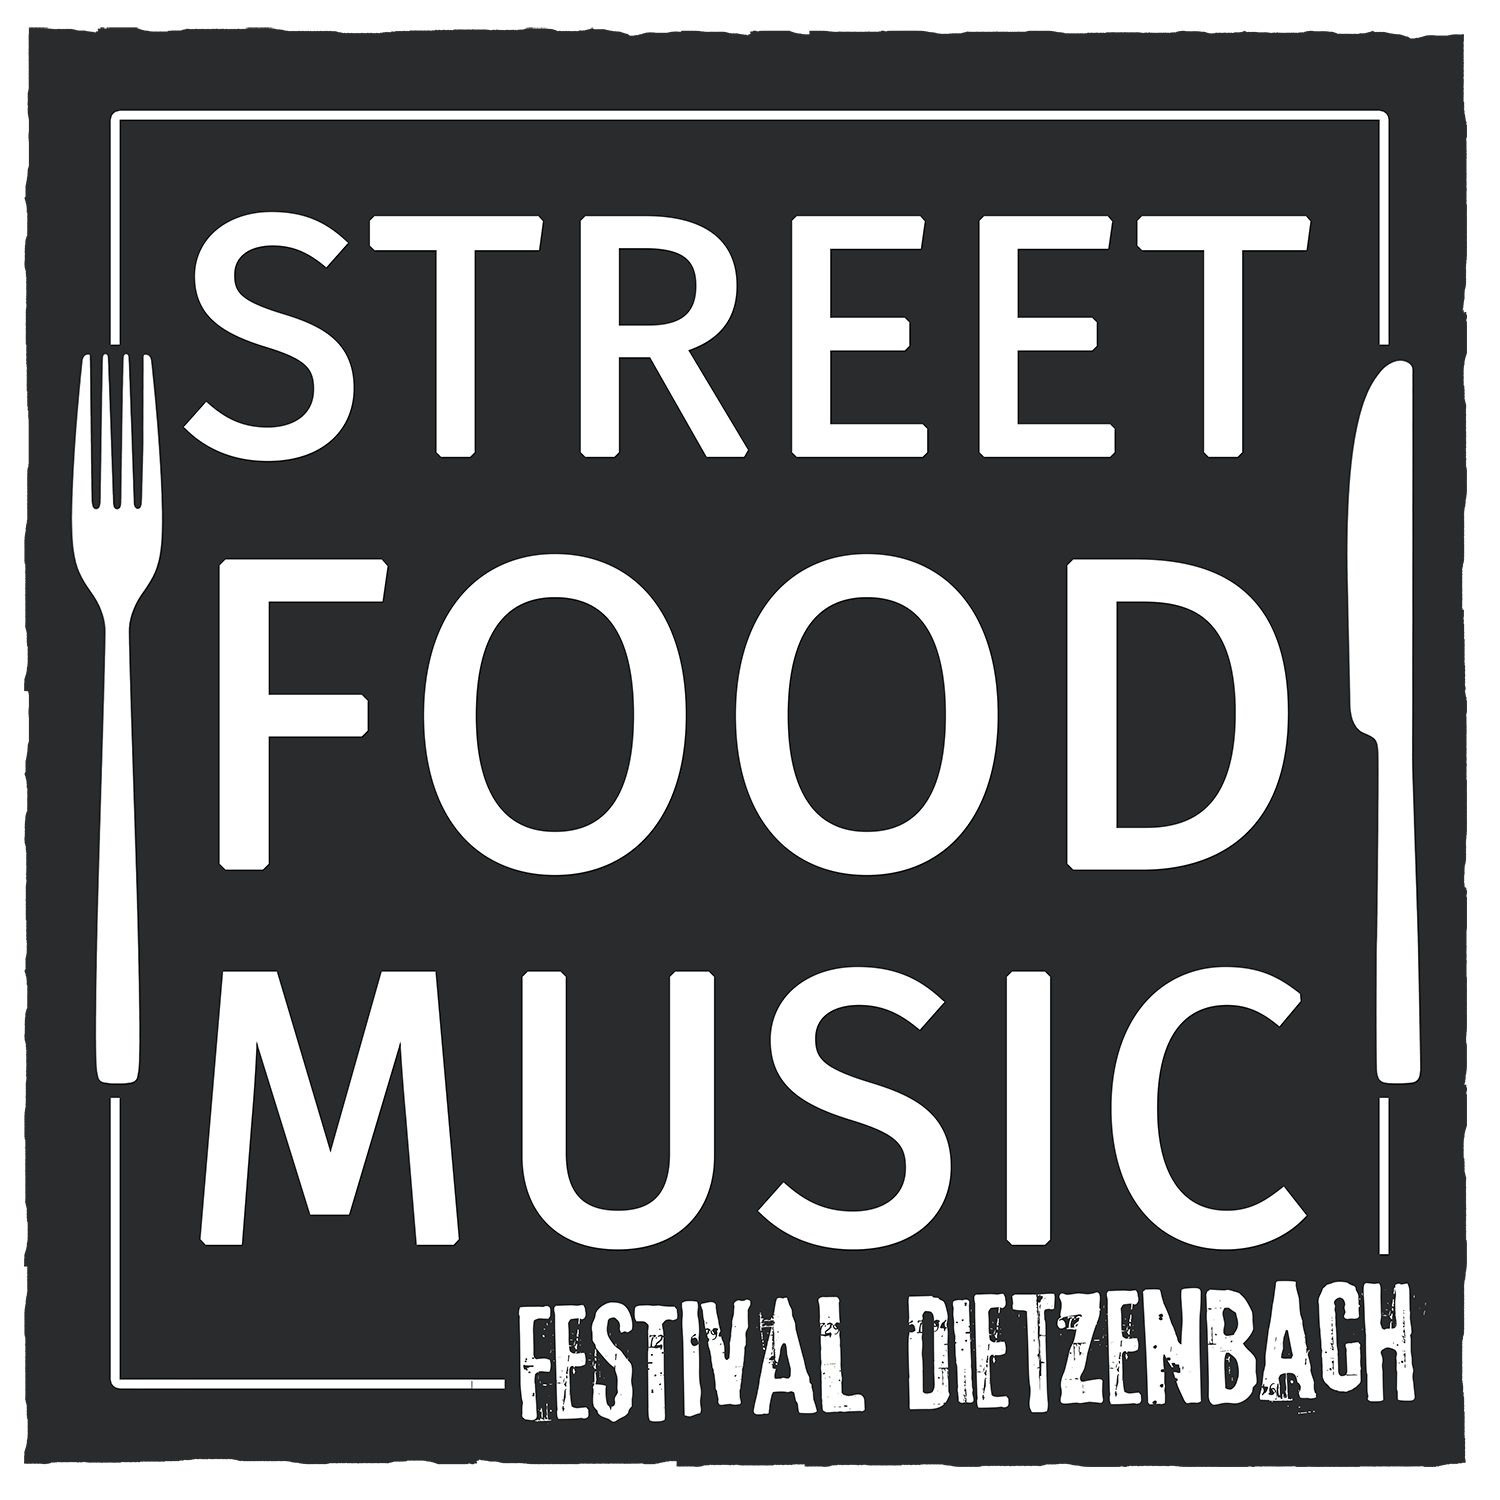 Street Food & Music Festival Dietzenbach